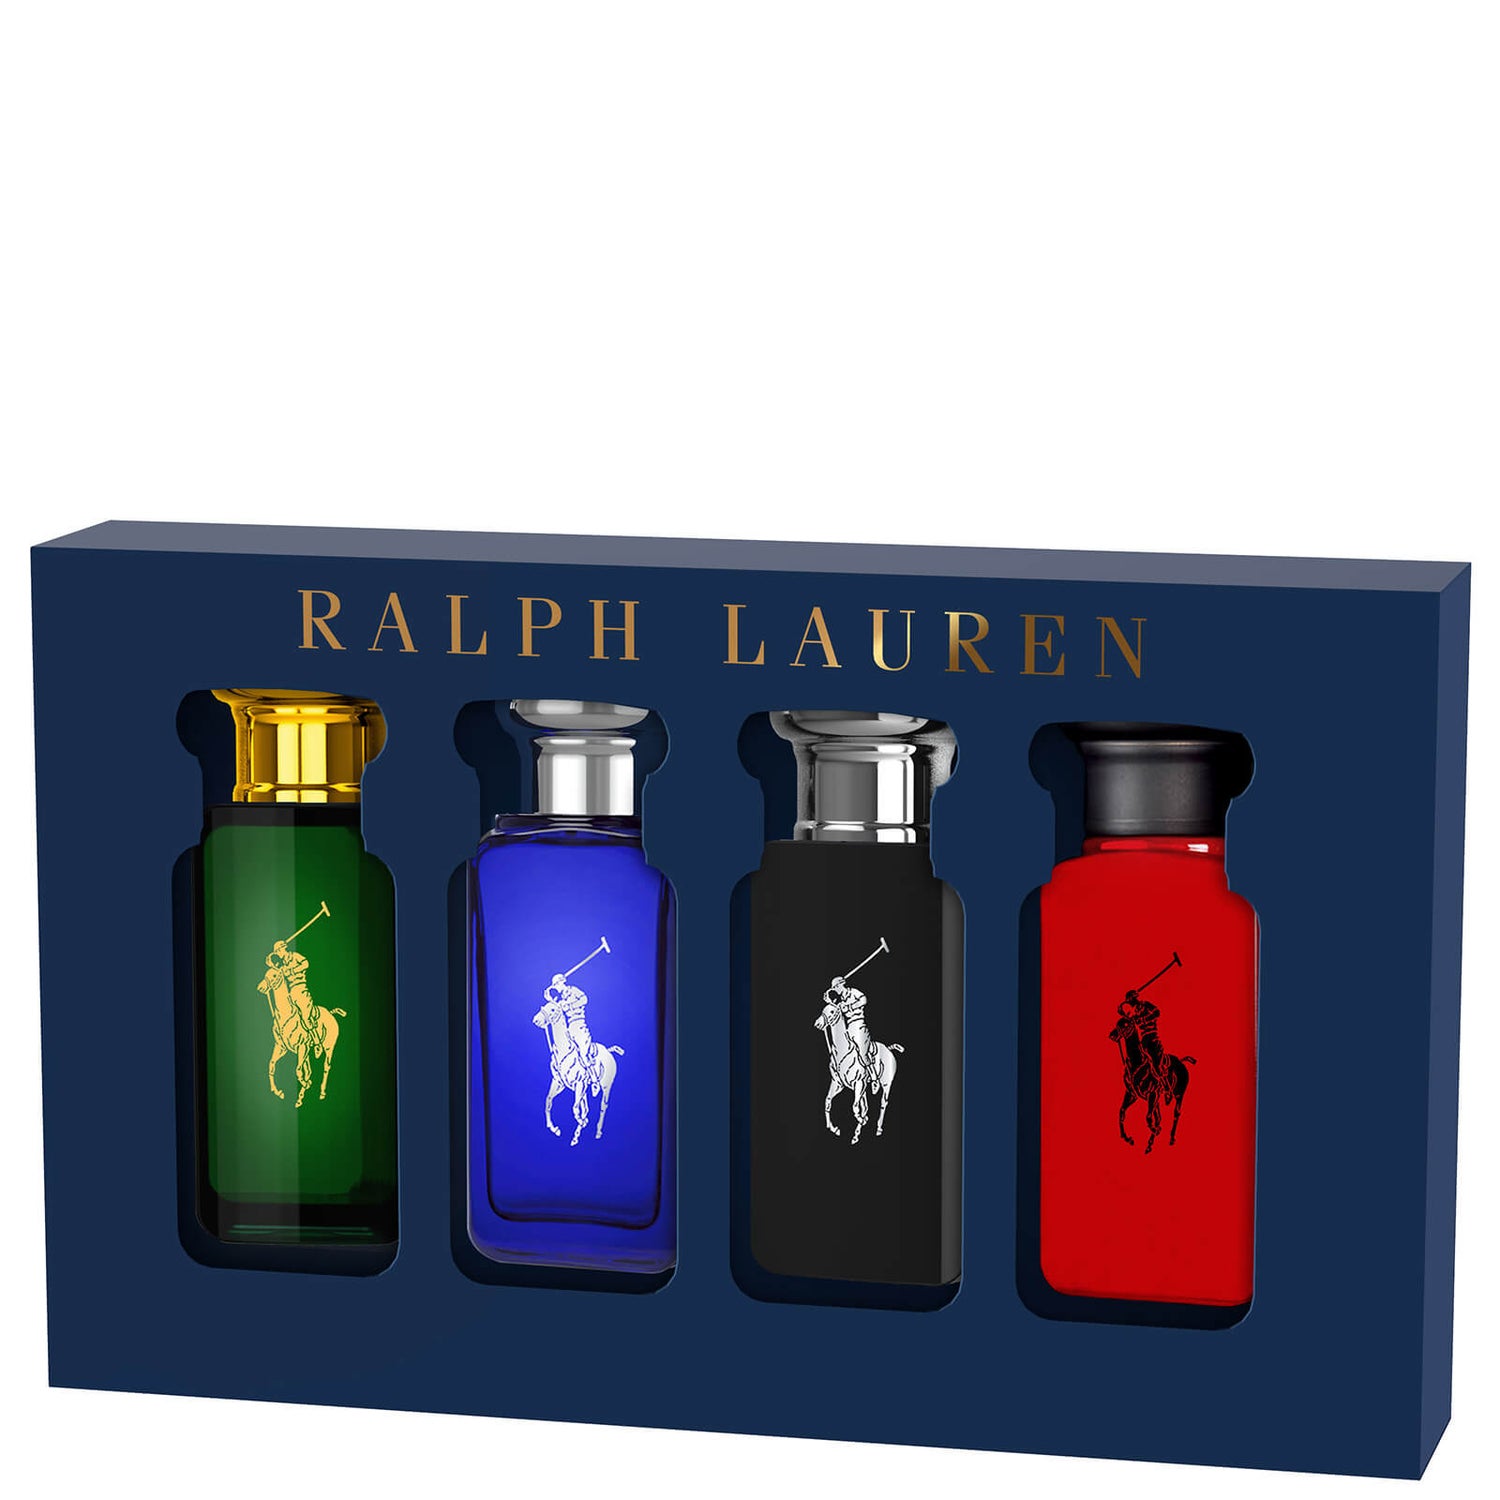 Ralph Lauren World of Polo Collection Eau de Toilette 4 x 30ml Gift Set